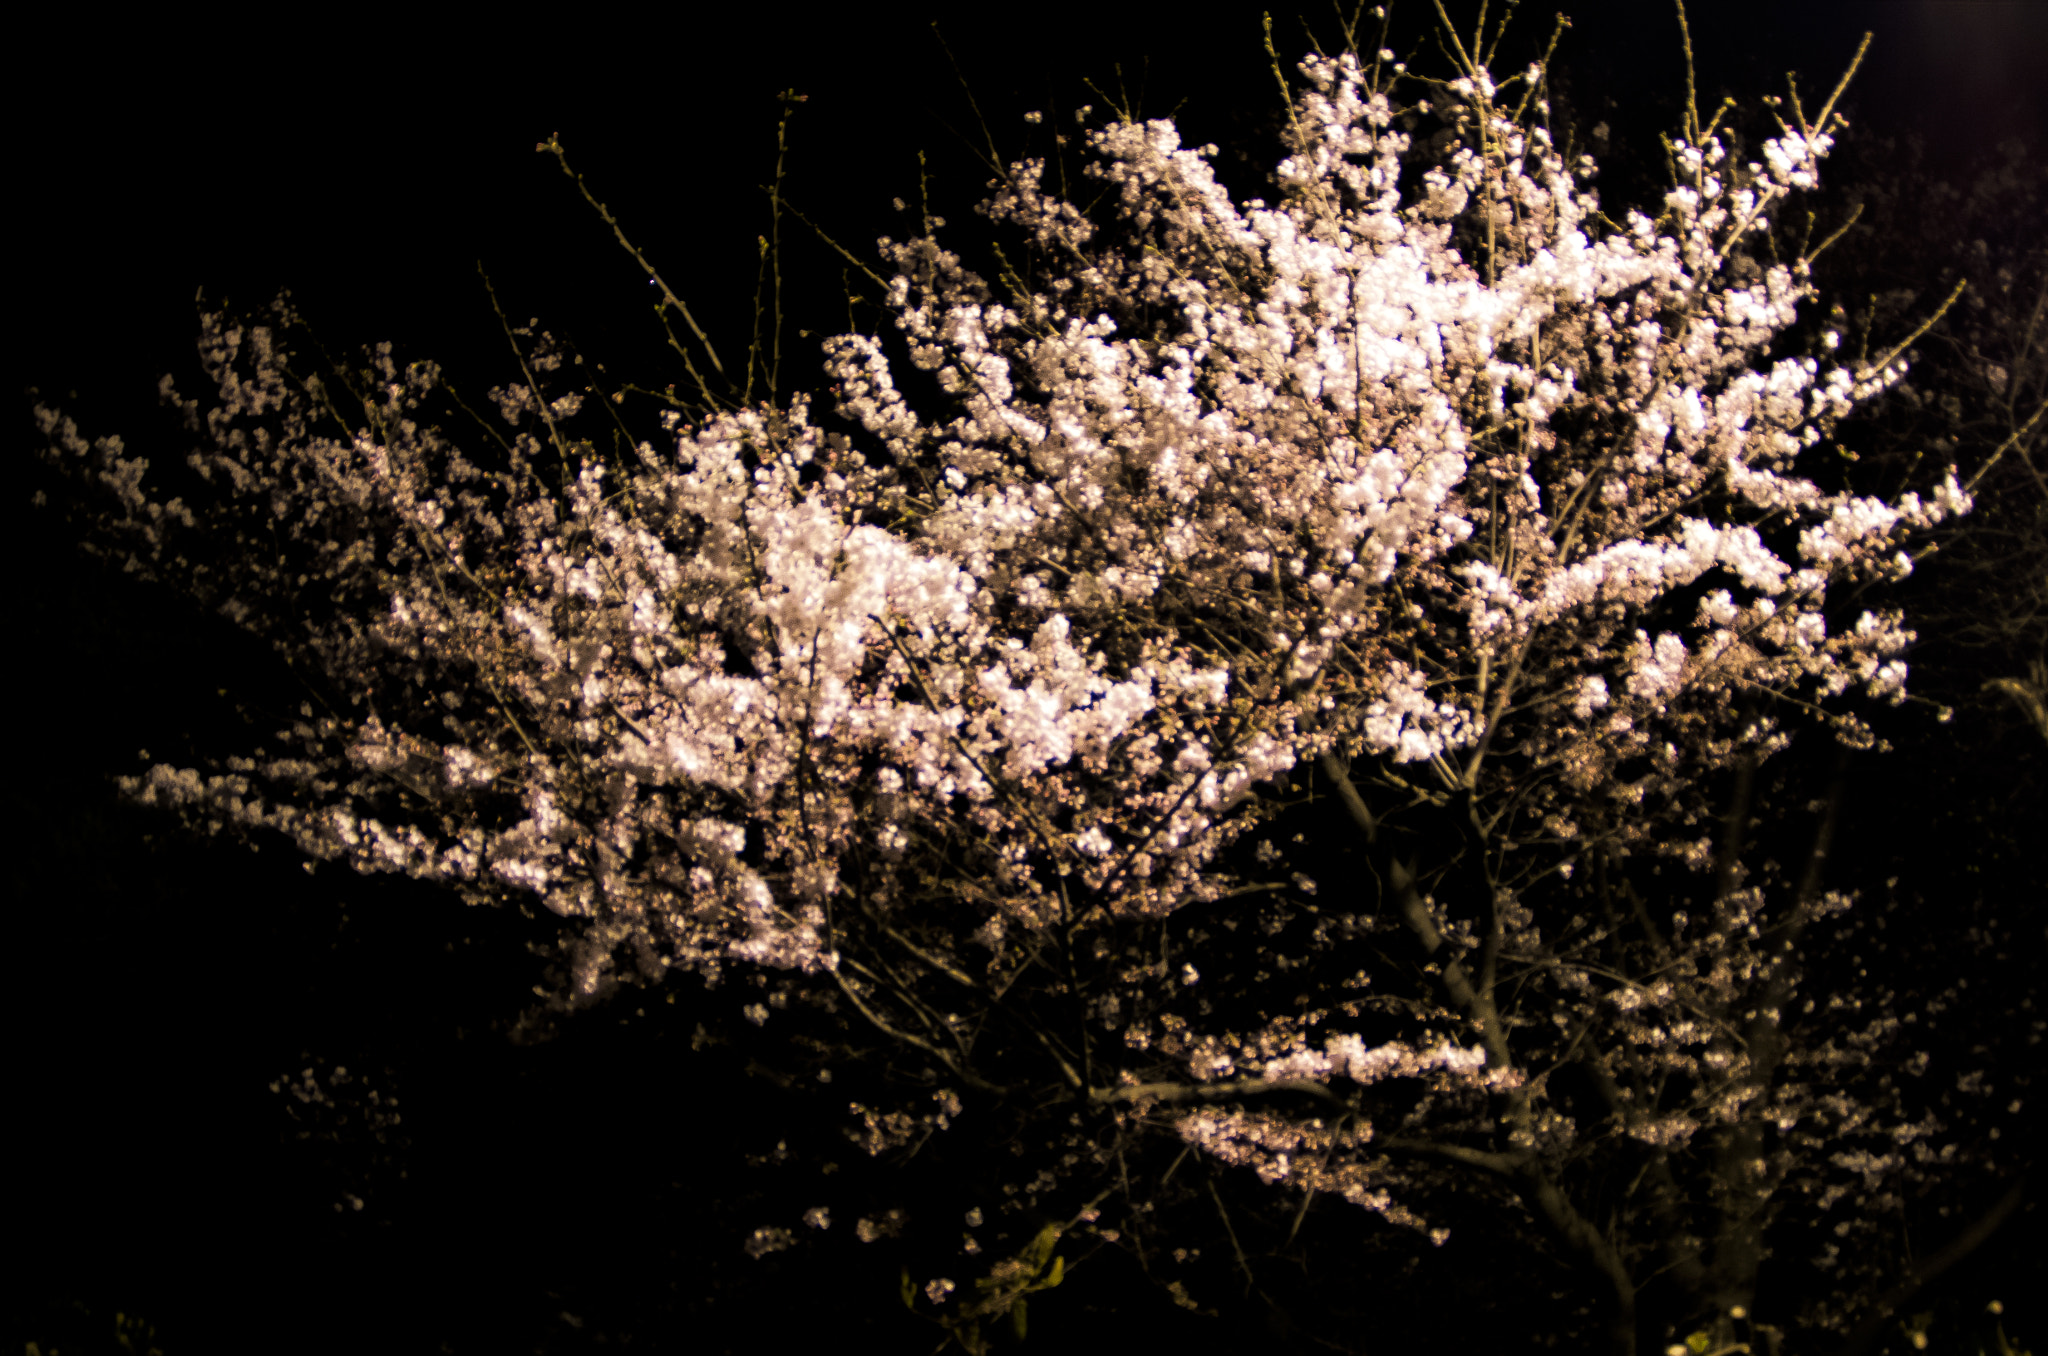 Pentax smc DA 10-17mm F3.5-4.5 ED (IF) Fisheye sample photo. Sakura, cherry trees photography